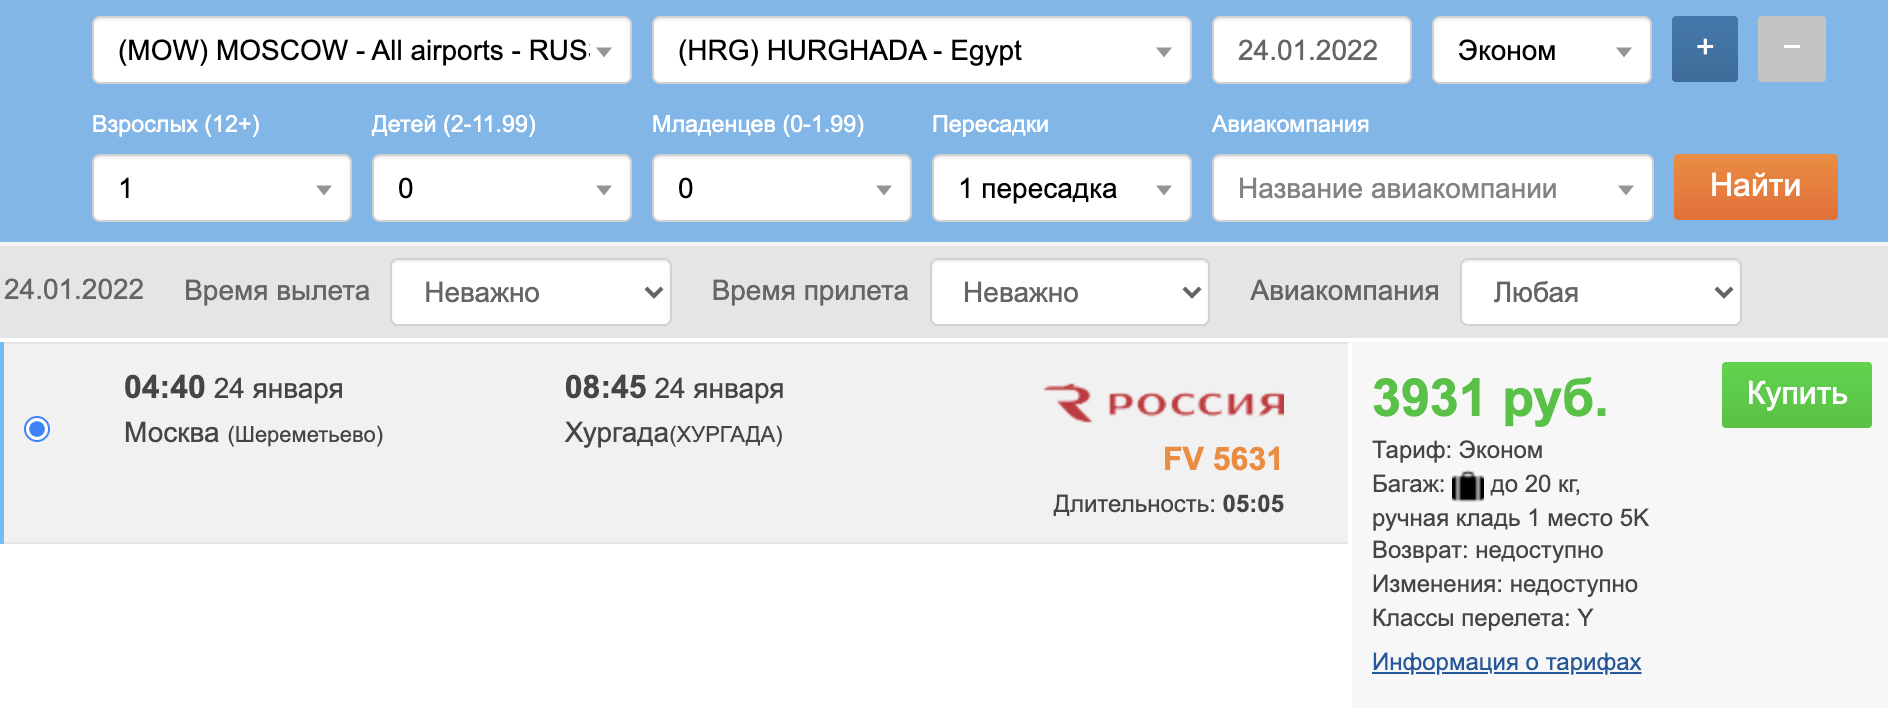 Cartas frescas de Moscou para o Egito a partir de 7800₽ ida e volta. Partida amanhã